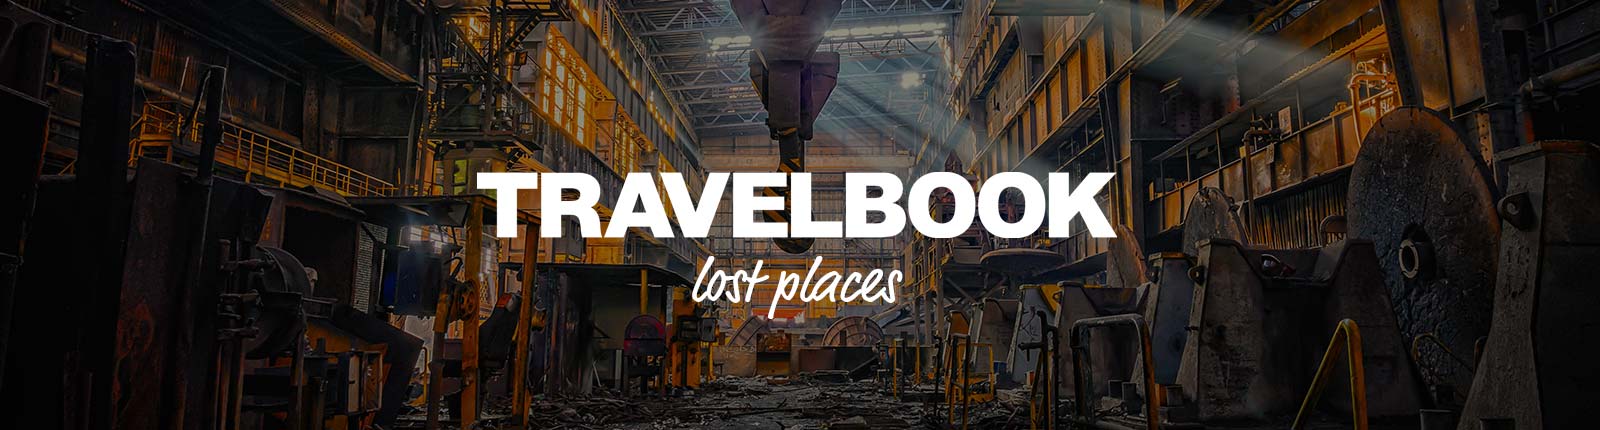 header_travelbook_lostplaces_schrift